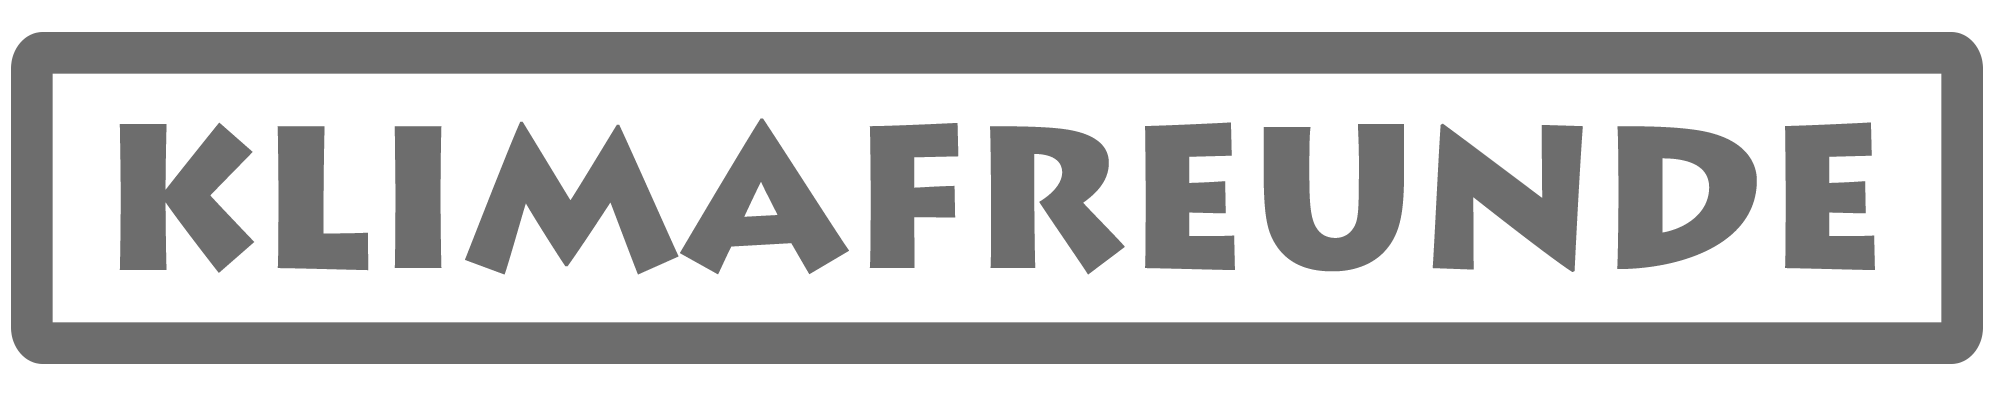 Klimafreunde_Logo